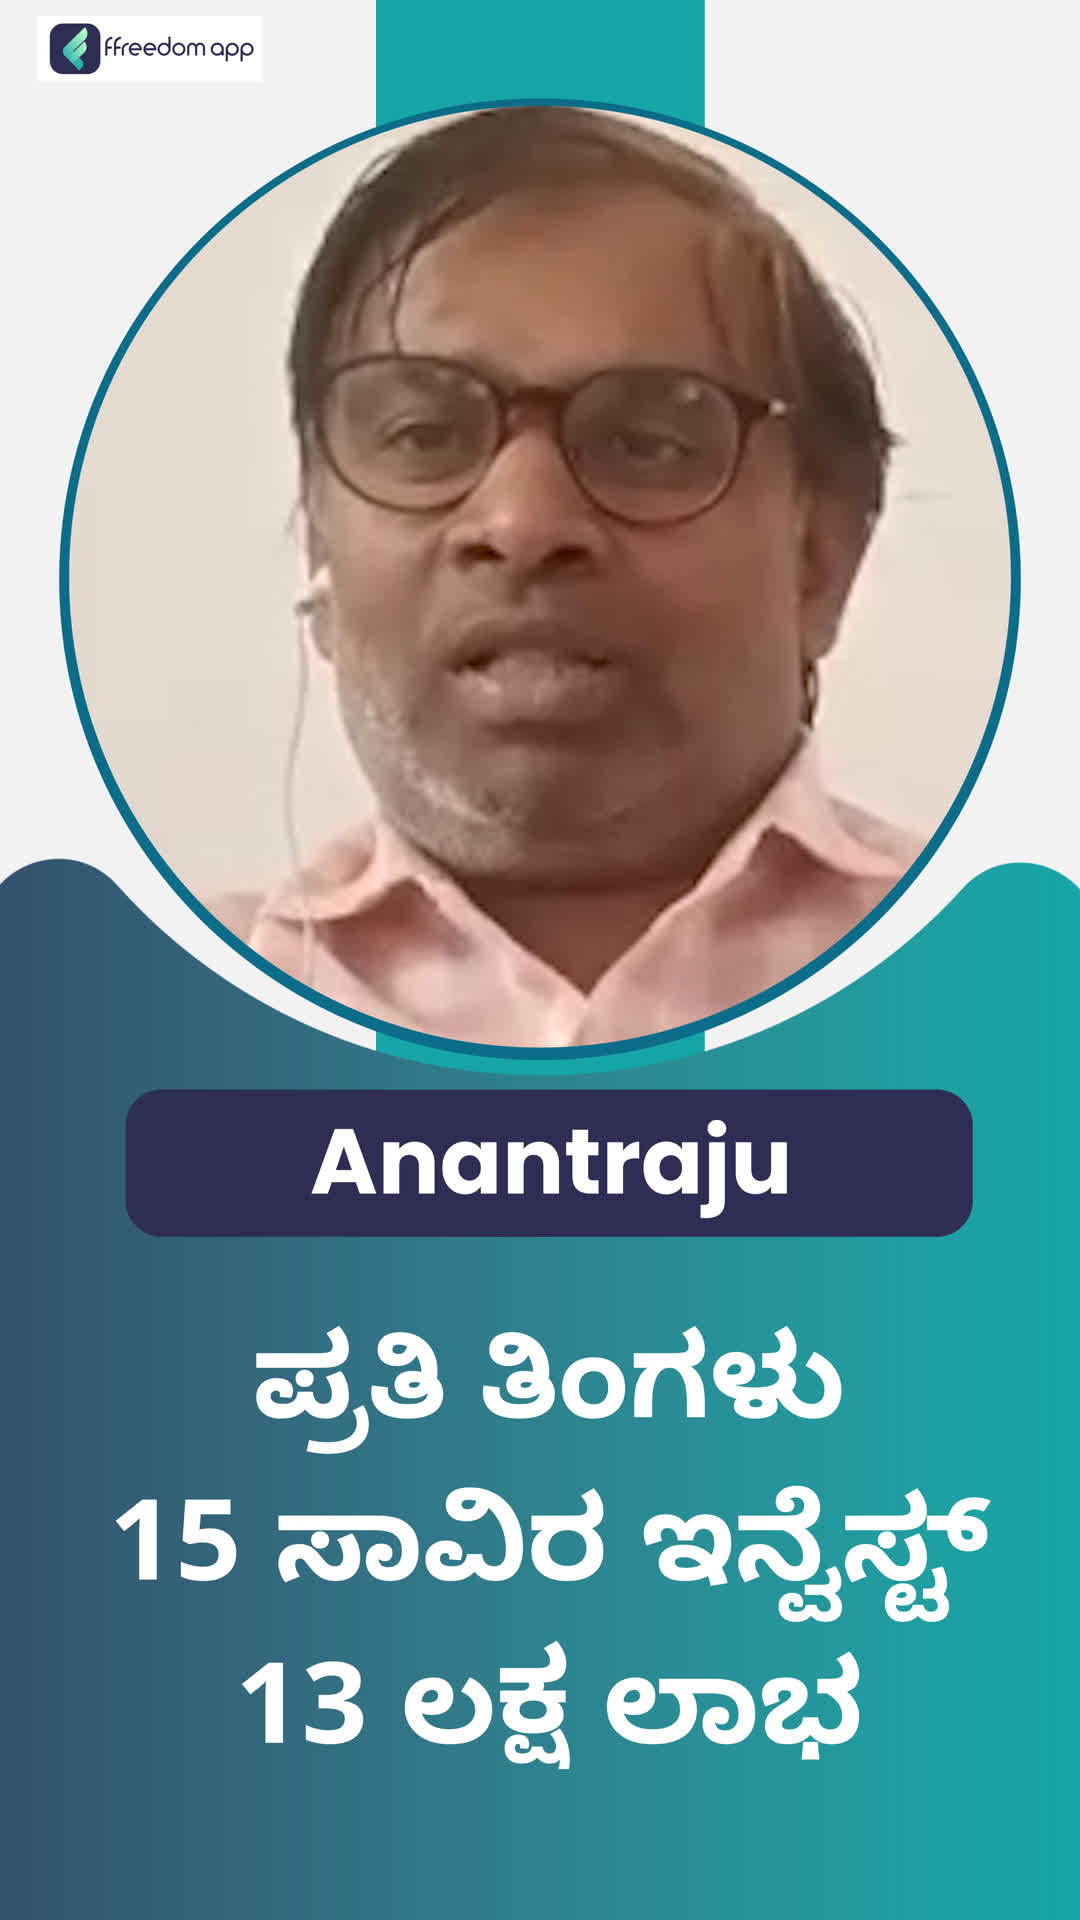 Anantaraju 's Honest Review of ffreedom app - Gadag ,Kerala